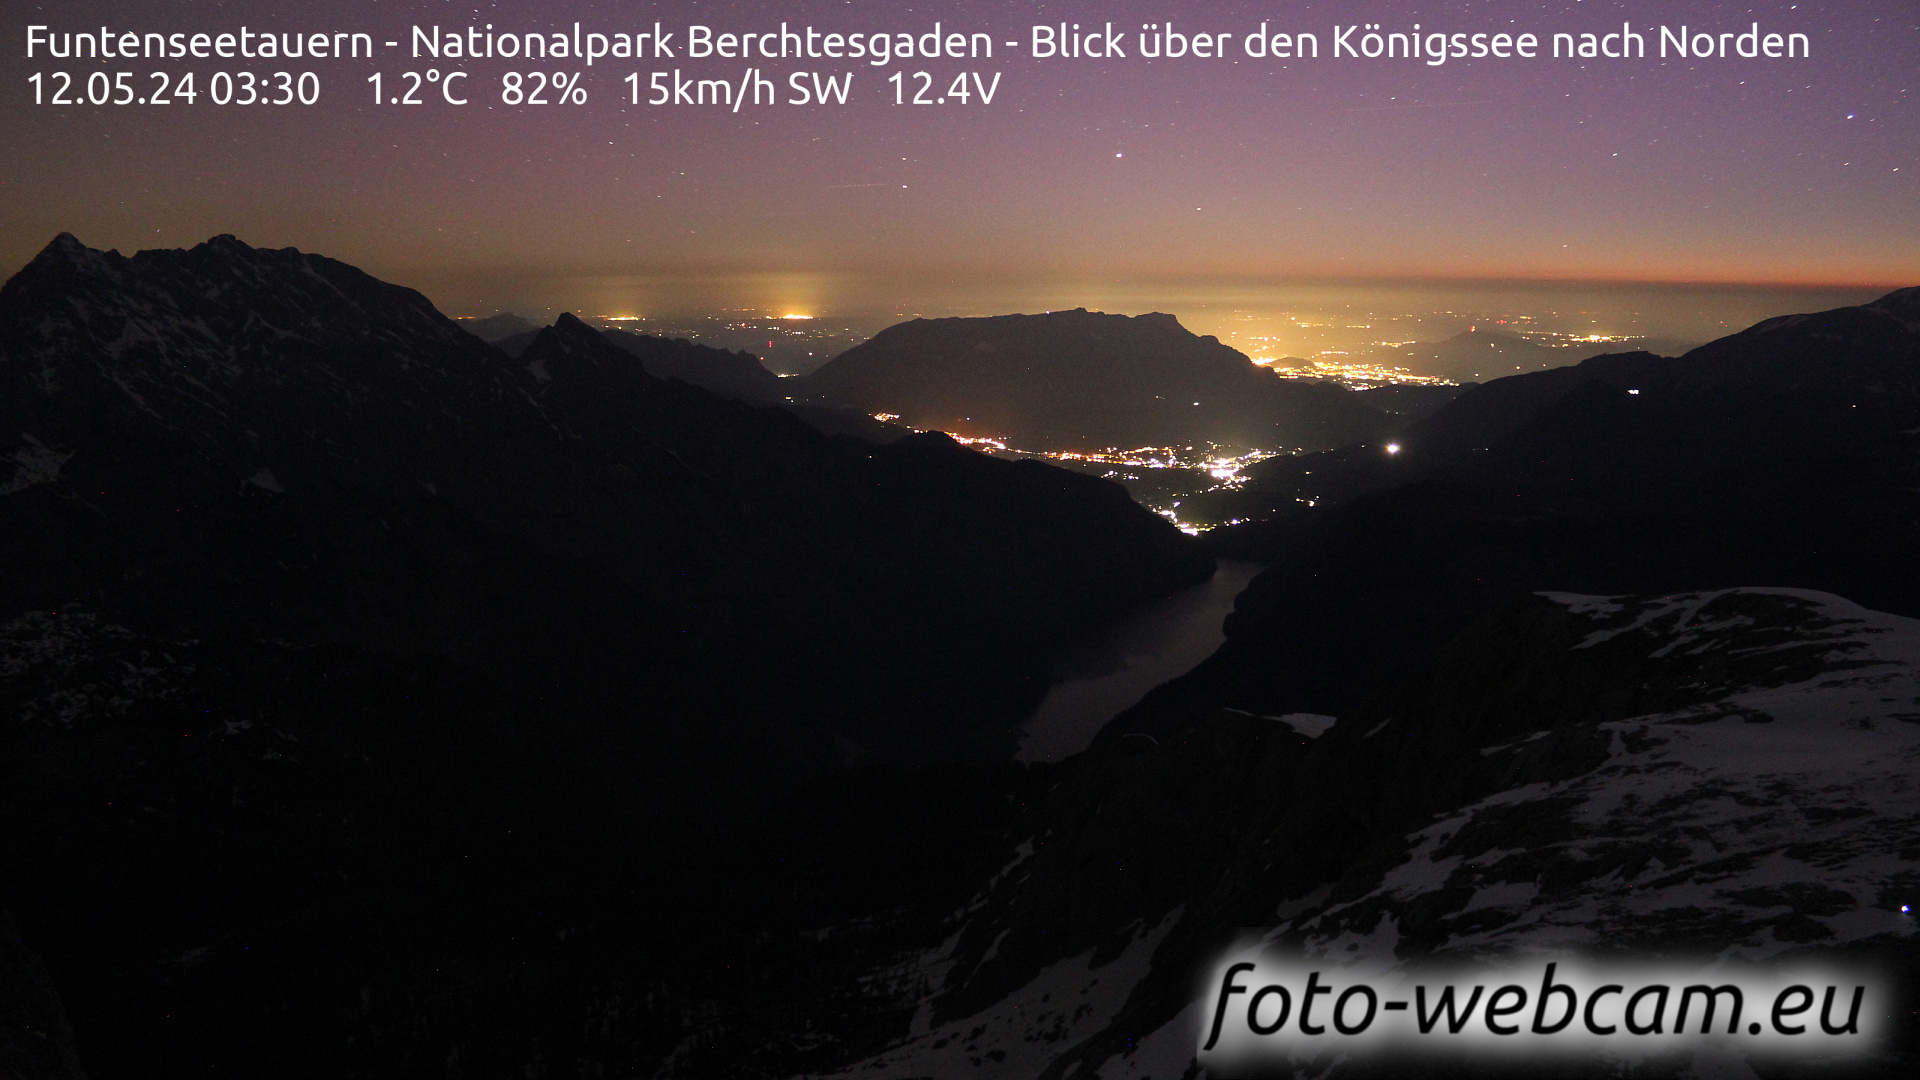 Berchtesgaden Do. 03:48